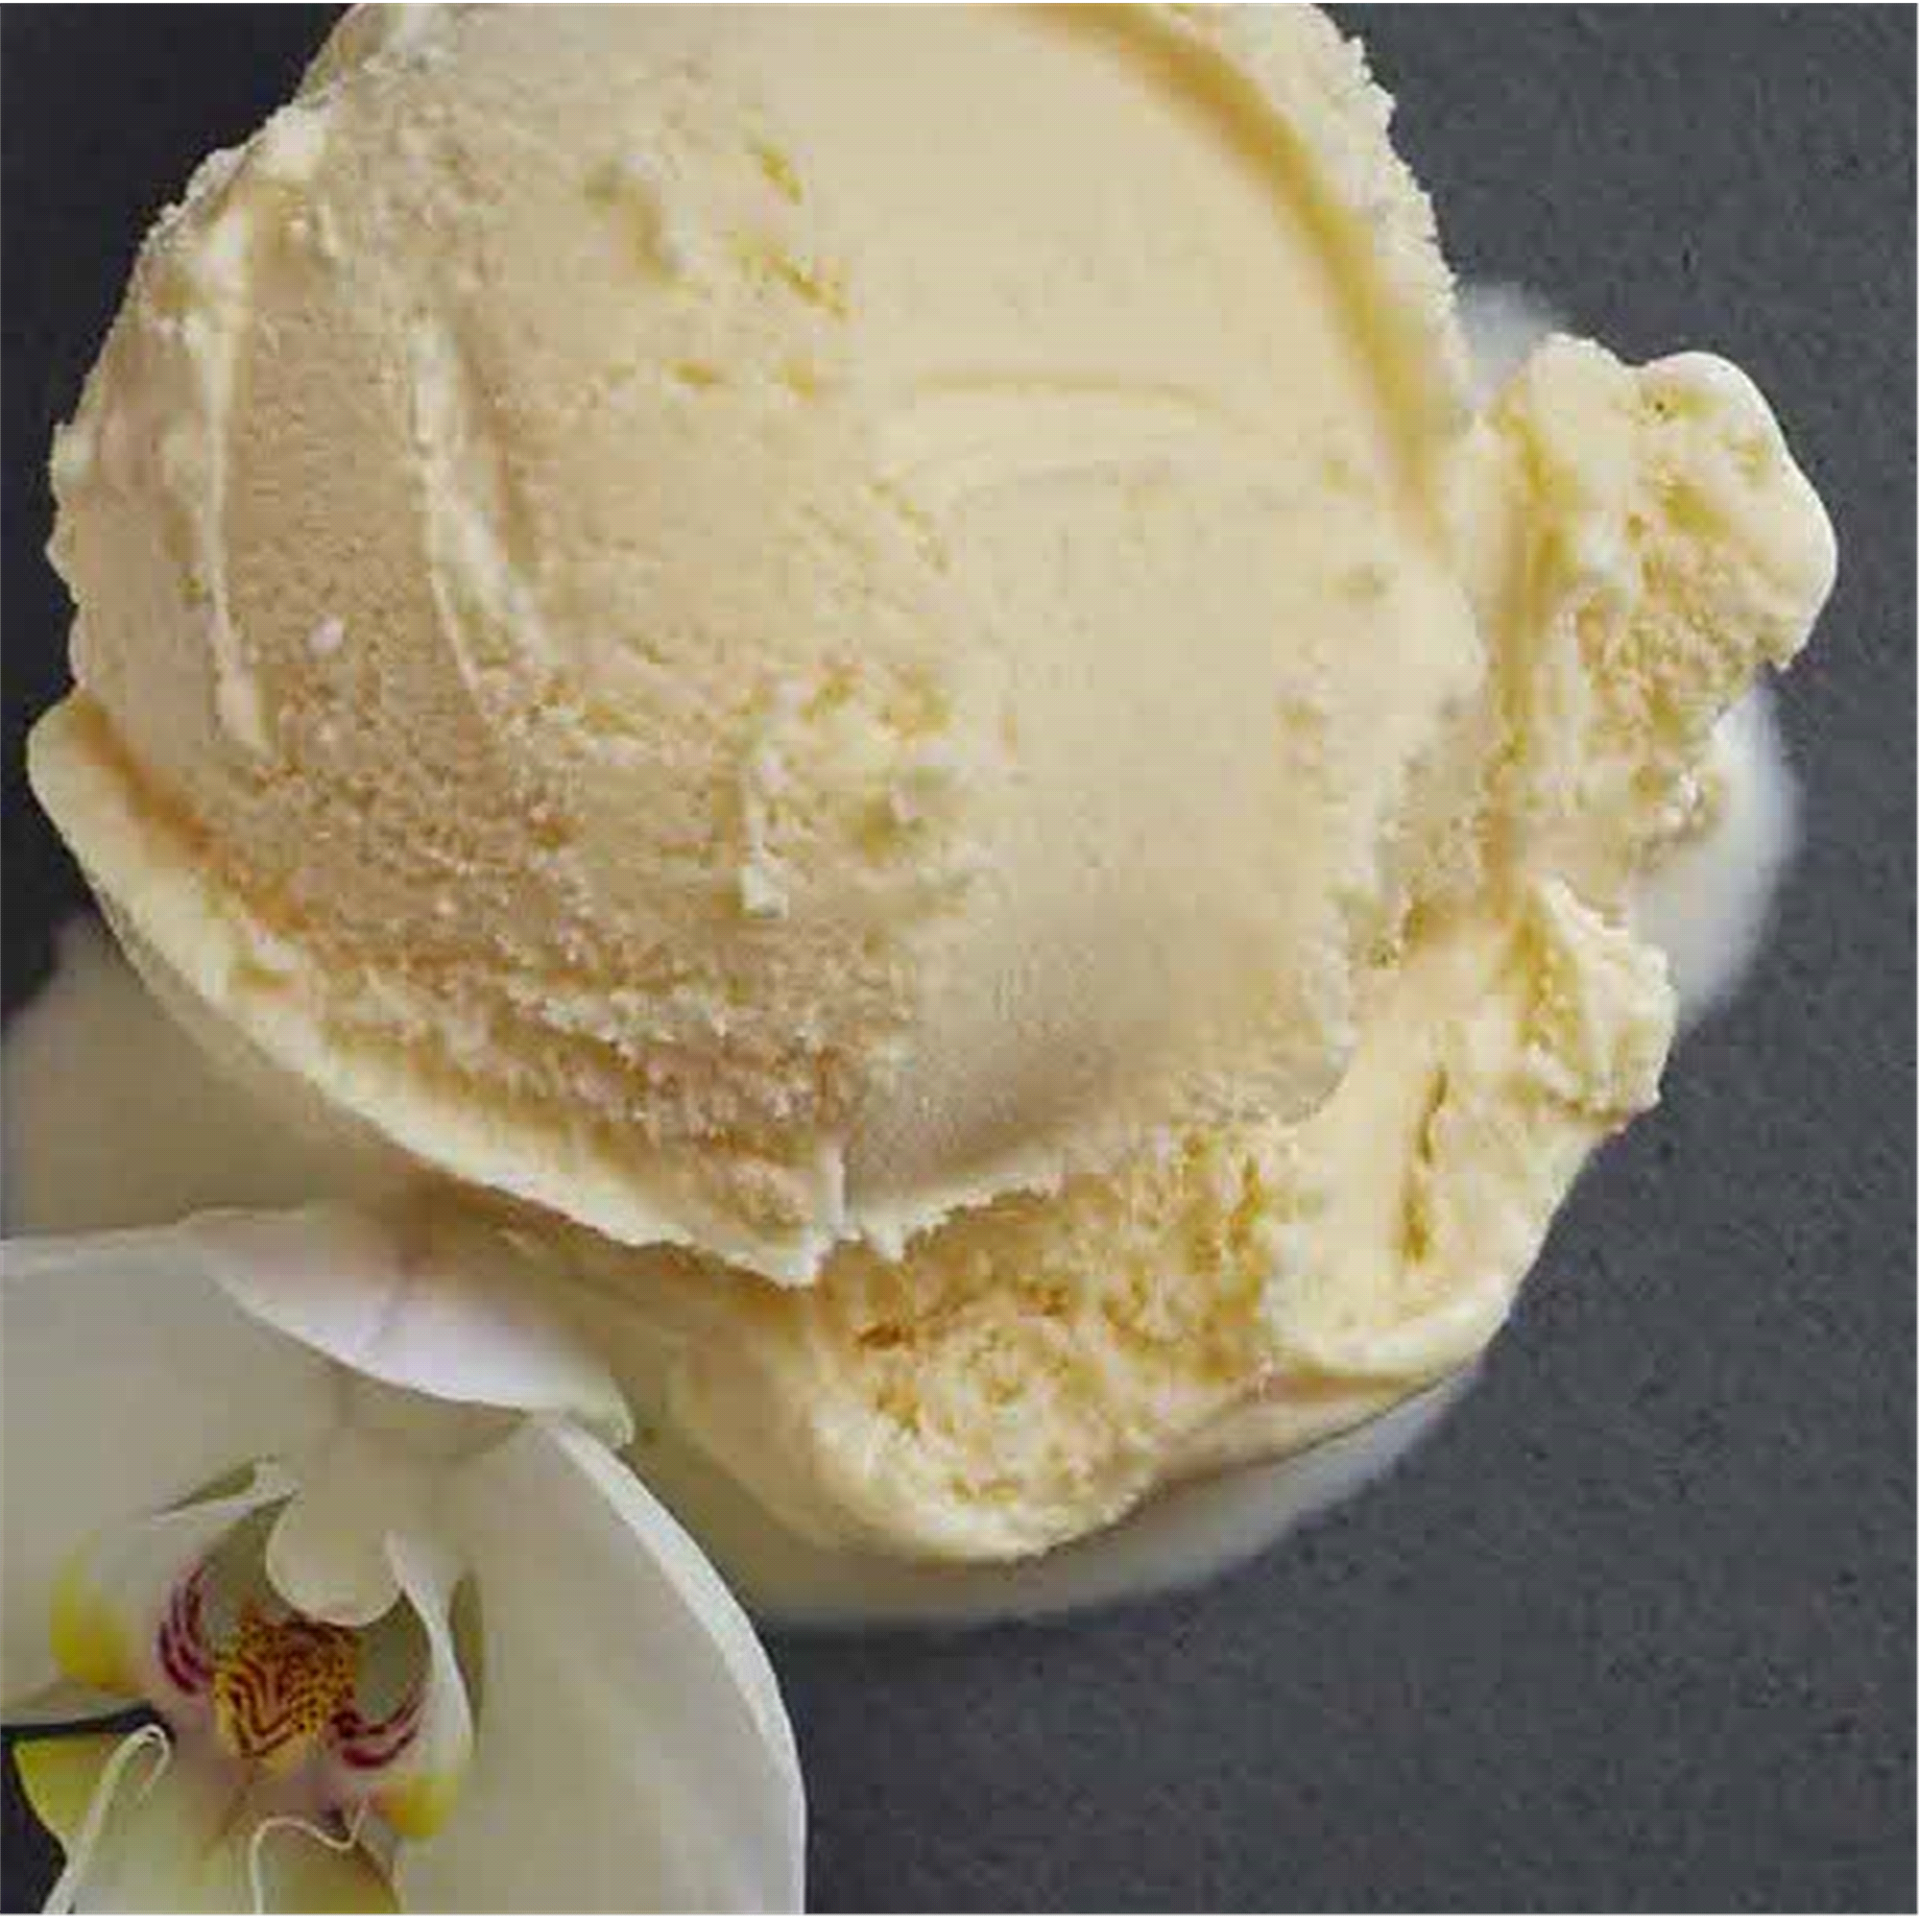 slide 14 of 25, Hudsonville Ice Cream French Vanilla, 48 oz